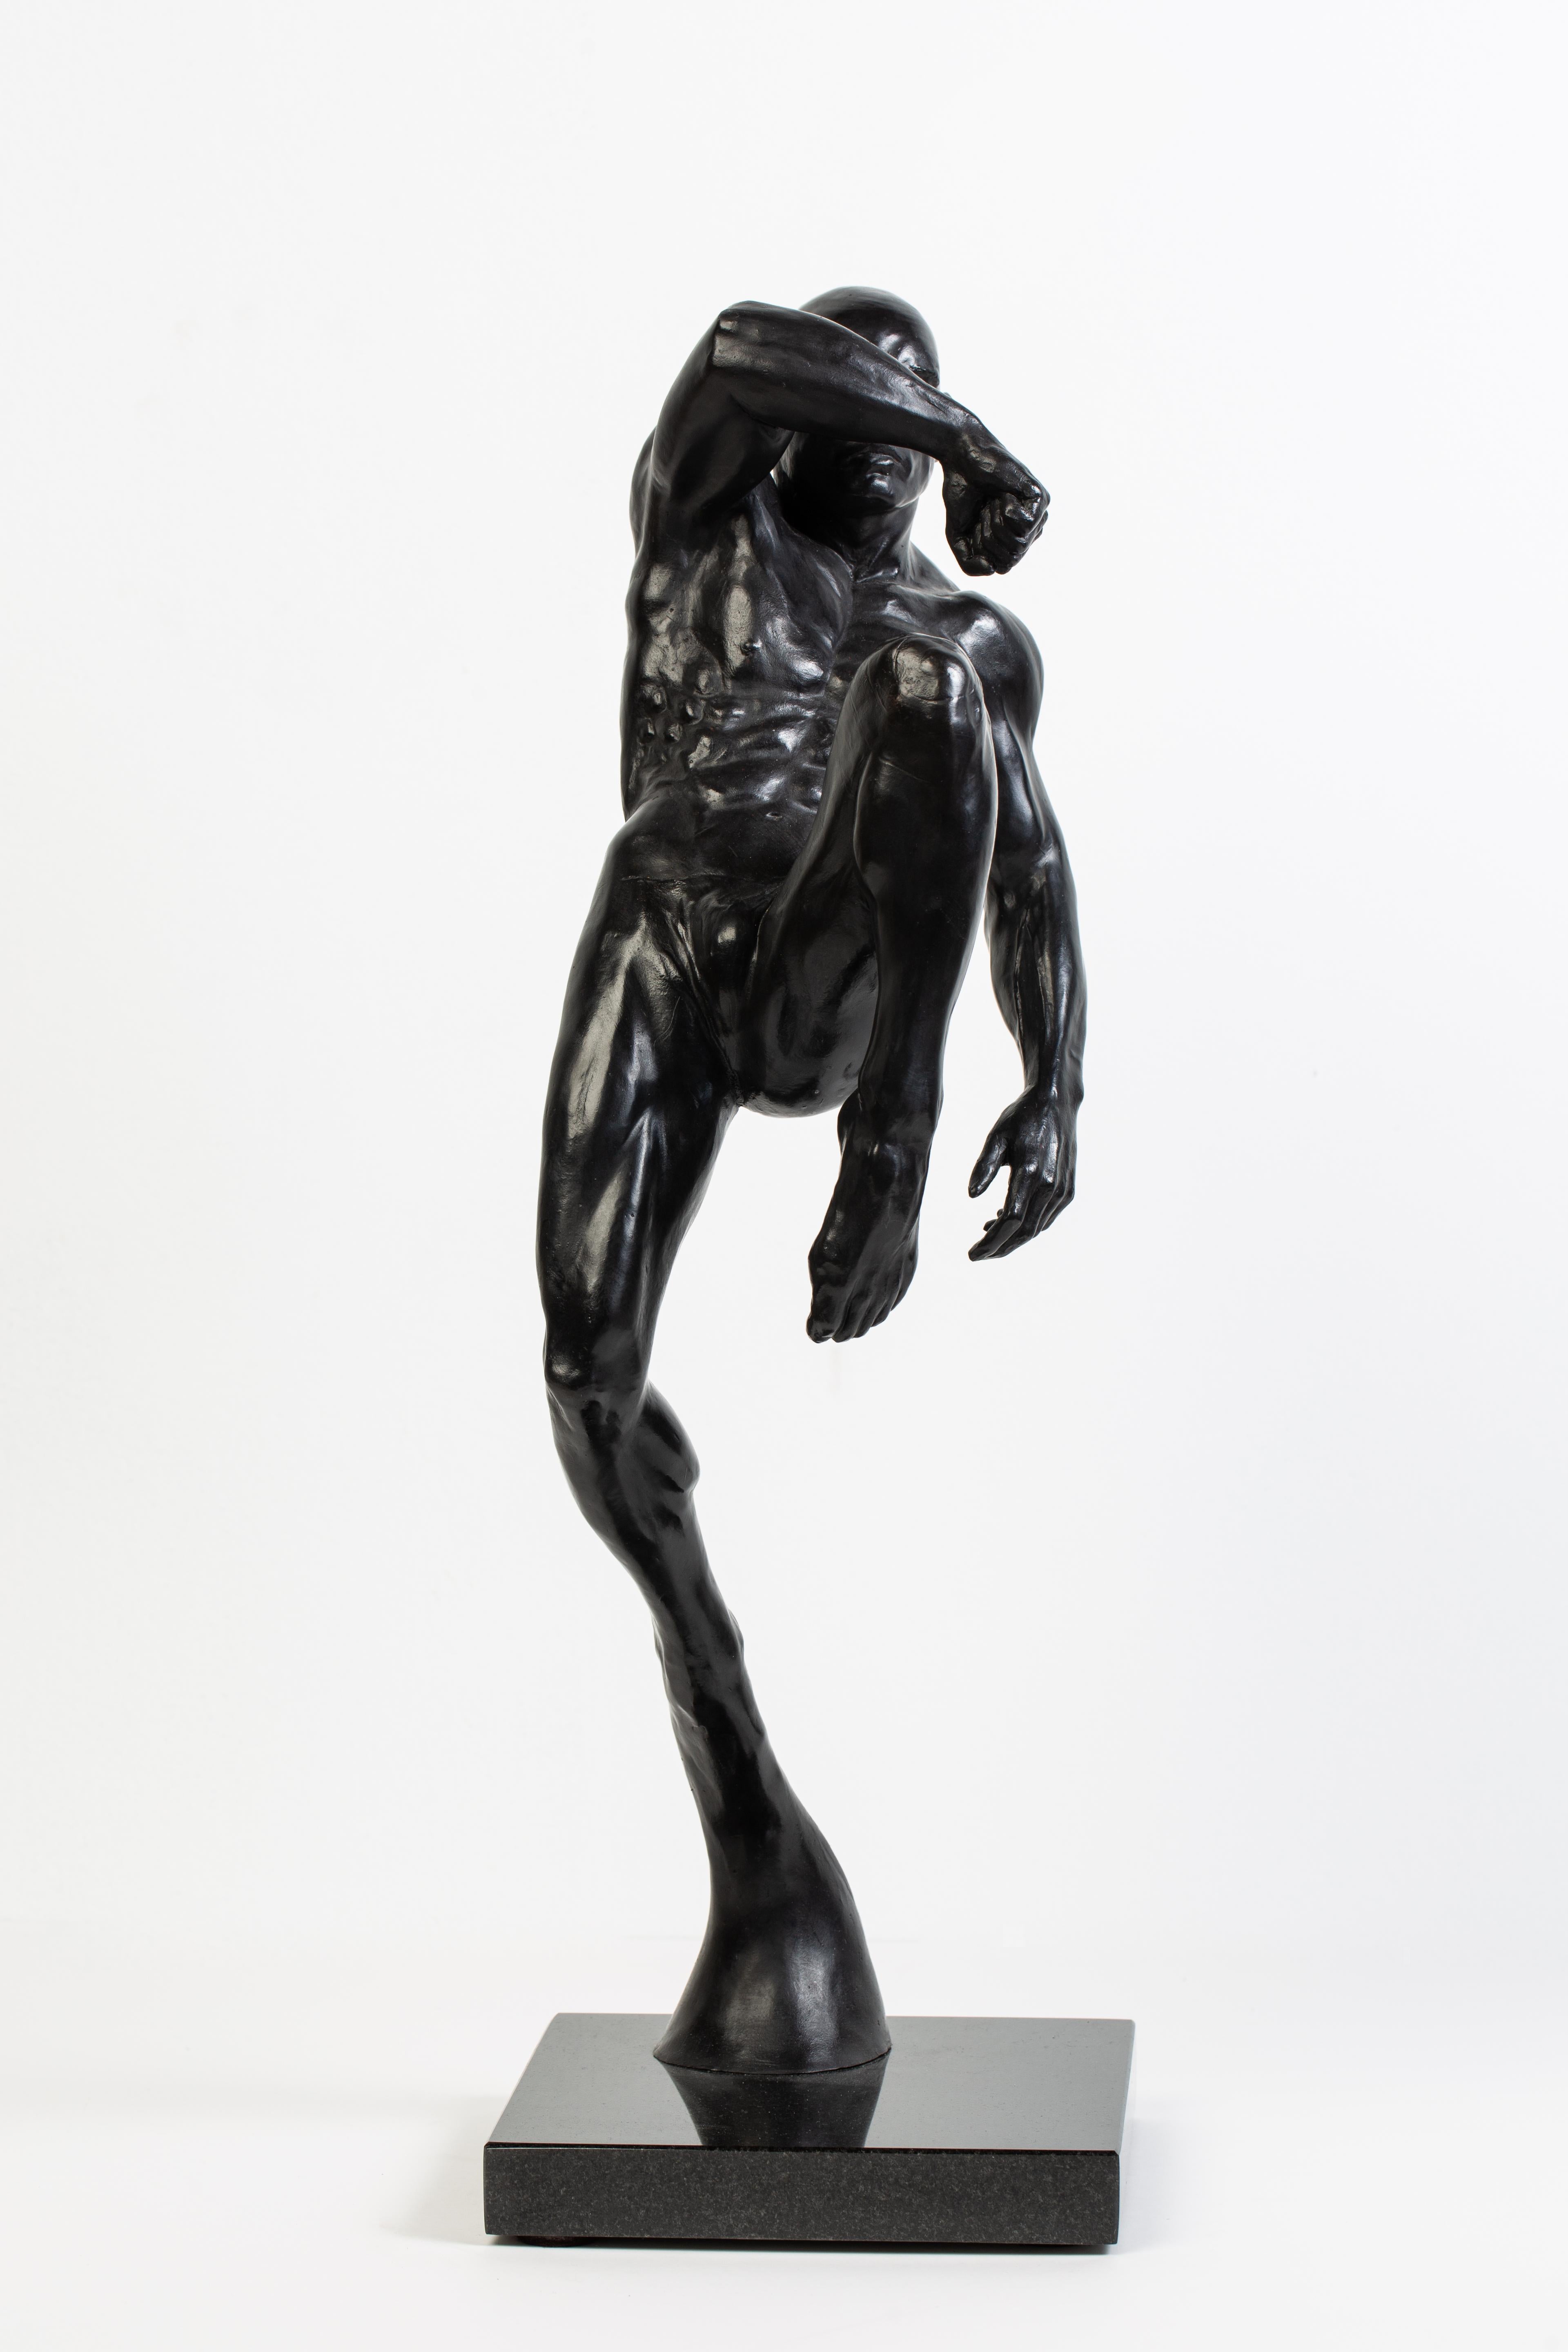 La beauté de la forme humaine est capturée dans cette dynamique sculpture en bronze d'un combattant de Muay Thai.  

Deans Kugler
Cet impact (combattant de muay thaï)
bronze
18h x 9w x 7d in
45,72h x 22,86w x 17,78d cm

Biographie
J'ai commencé à